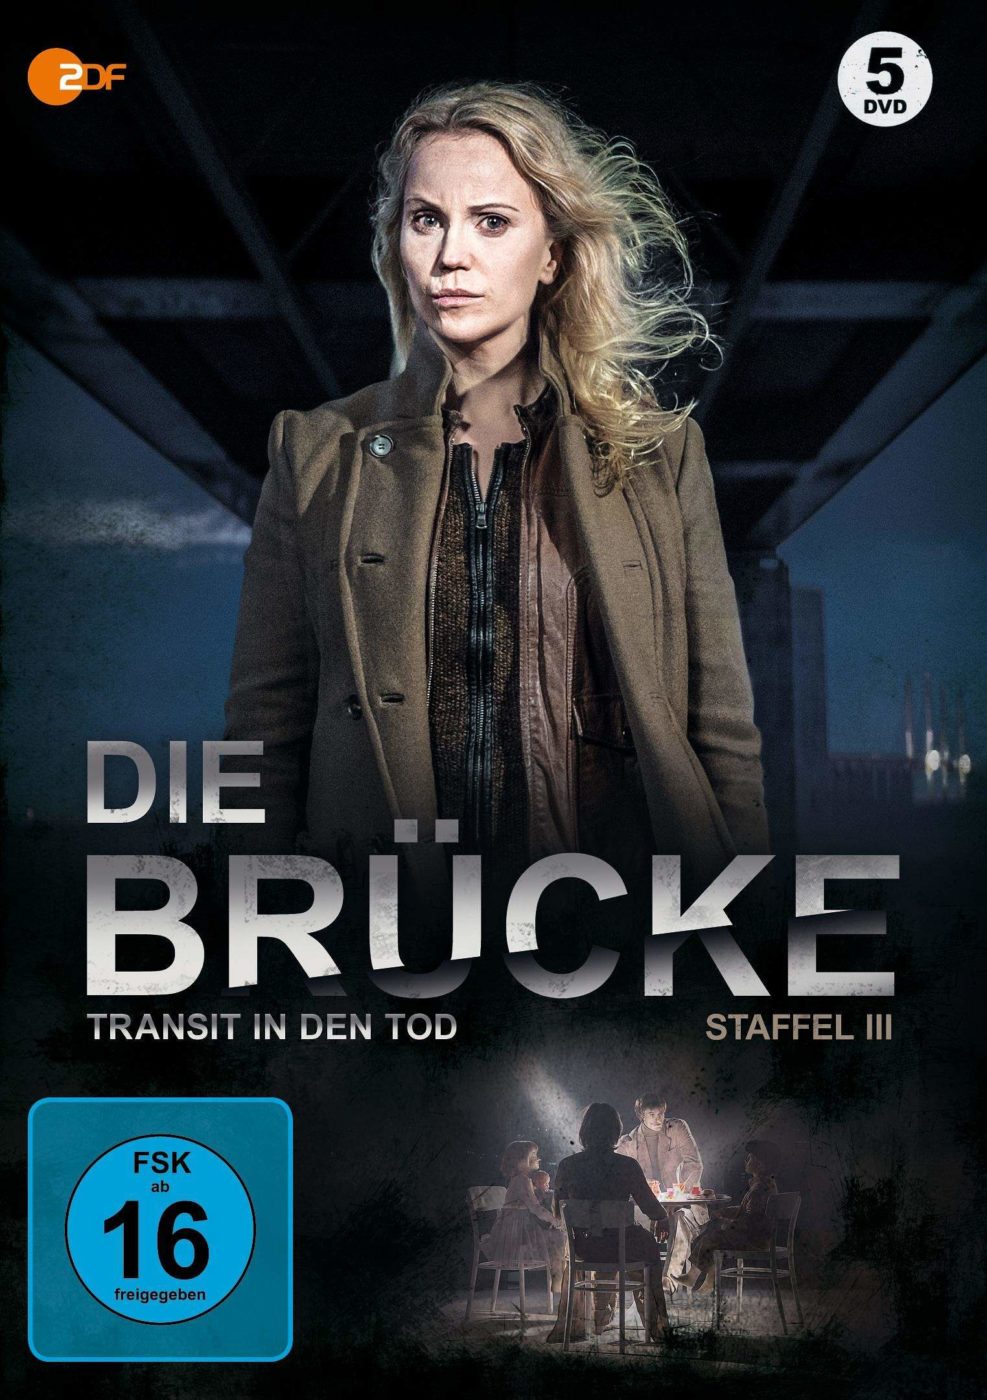 Skandinavischer Krimi, Schwedische Serie, Die Brücke, Tod in den Transit, ZDF, DVD, Bluray, Blog, Skandinavien, Schweden, Dänemark